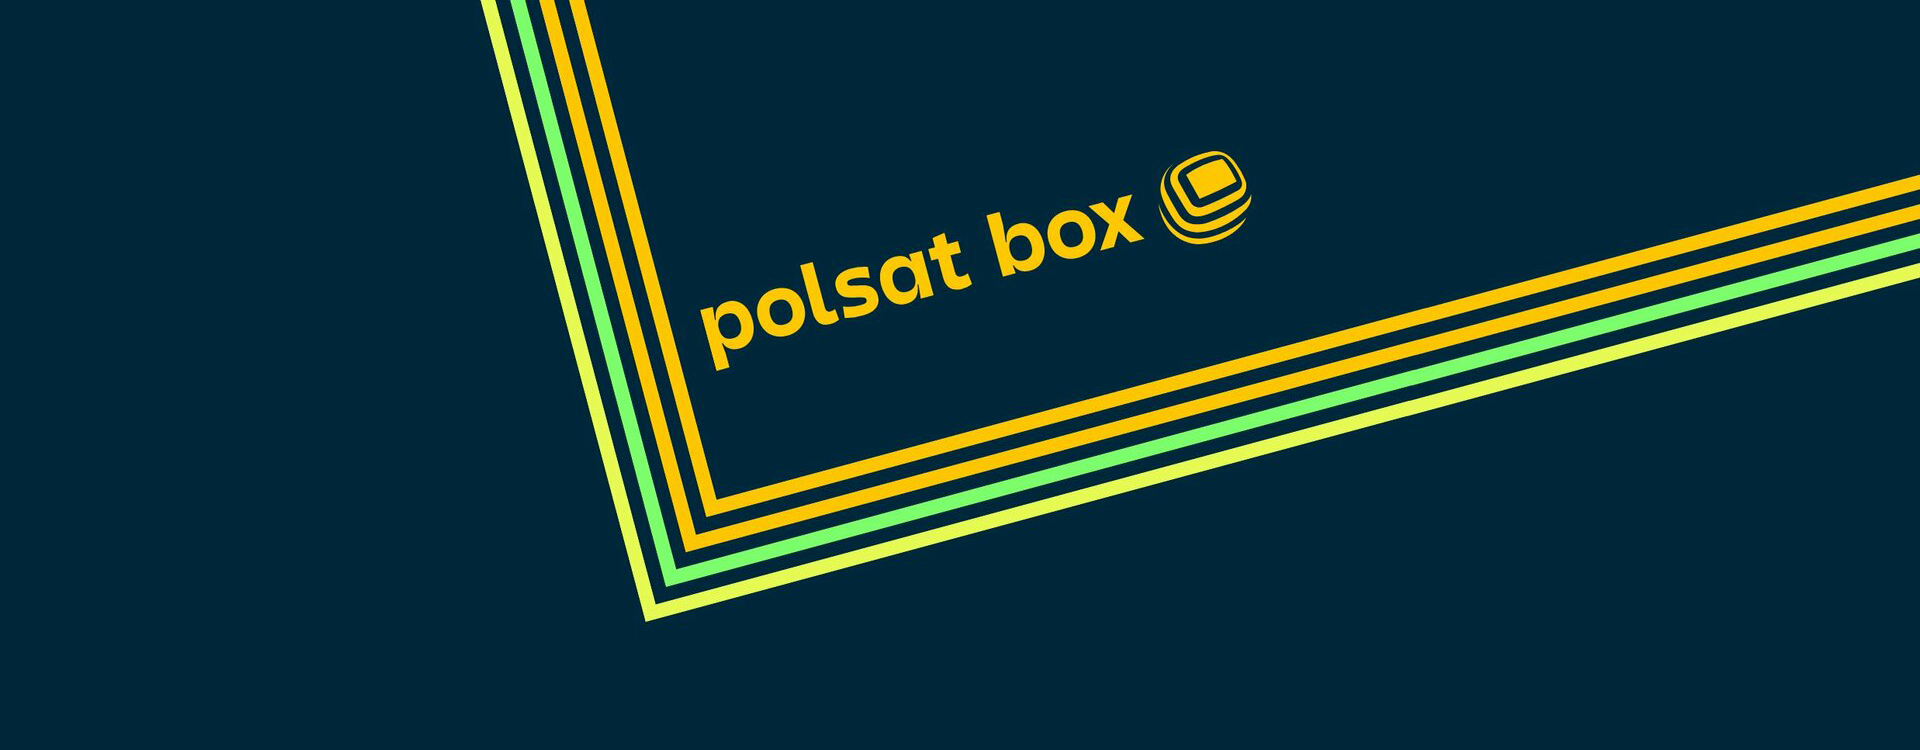 Polsat BOX Go - wszystko o telewizji na życzenie